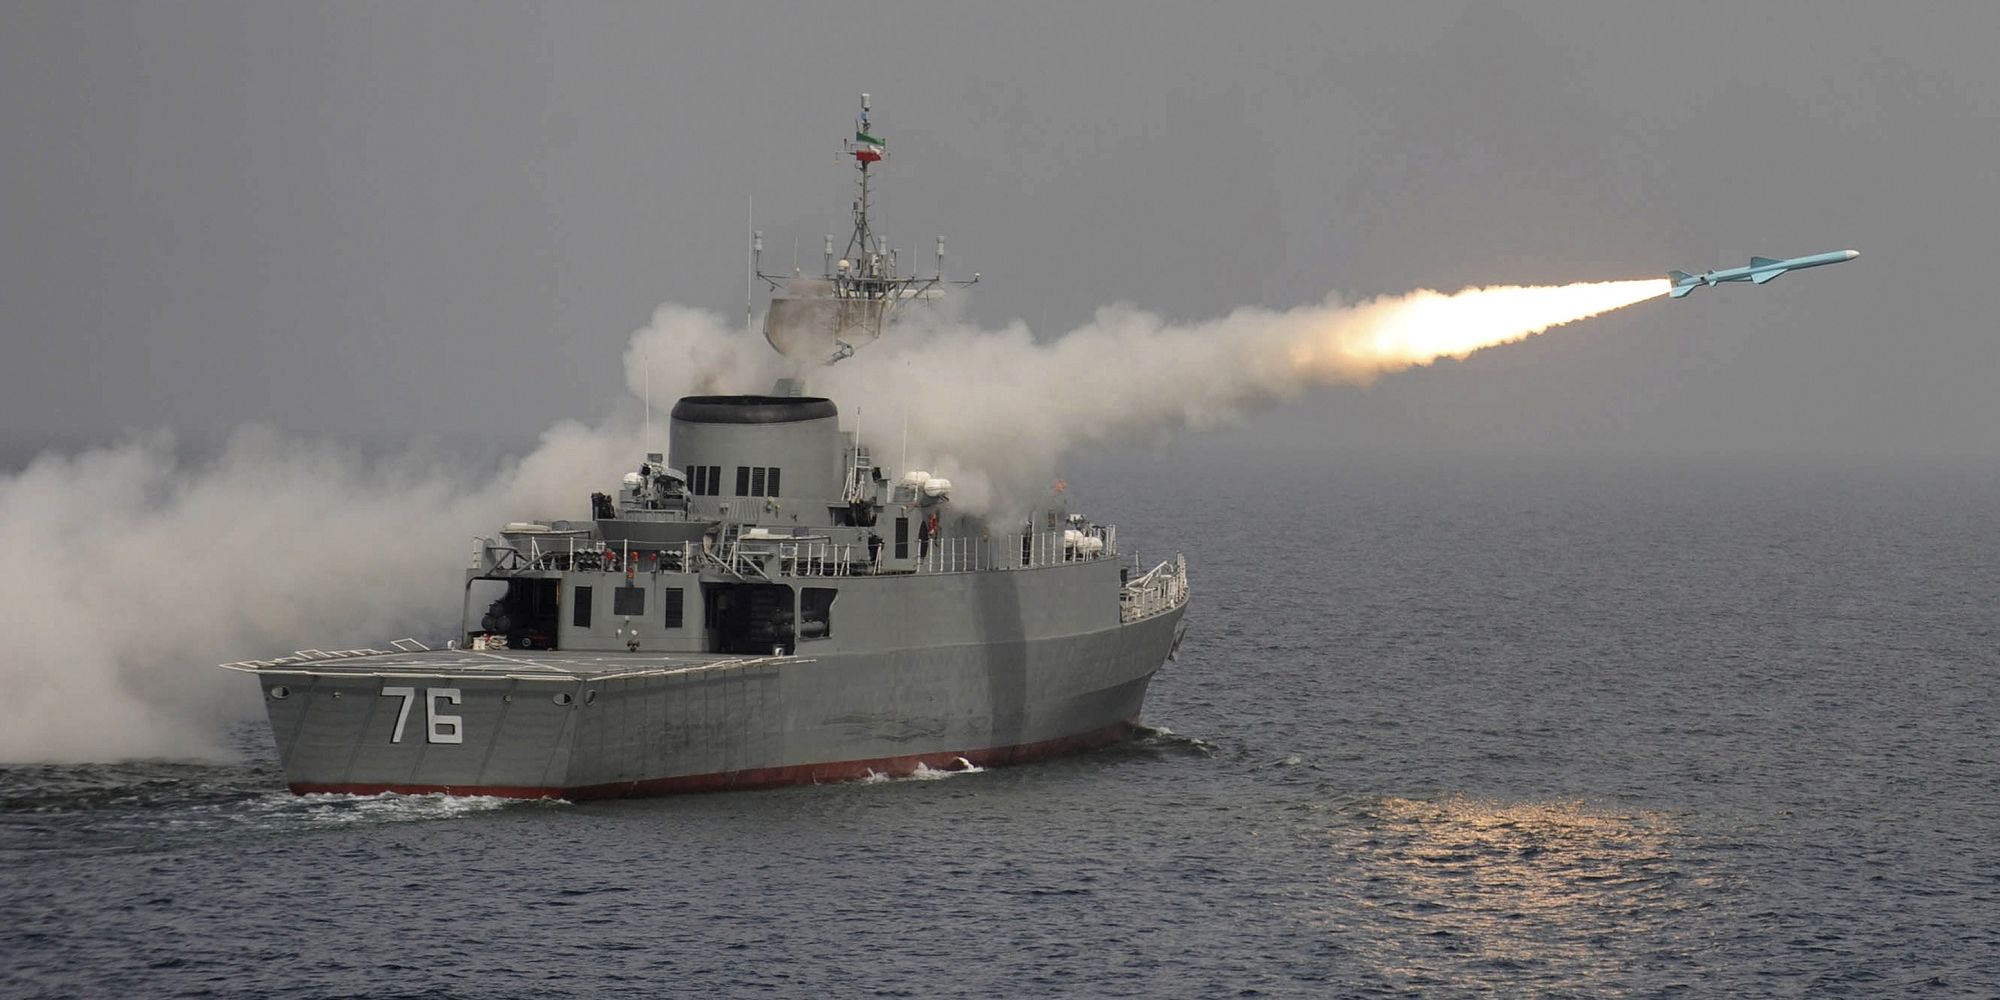 Insiden Kapal Perang Iran Salah Tembak Teman Sendiri, 19 Pelaut Tewas